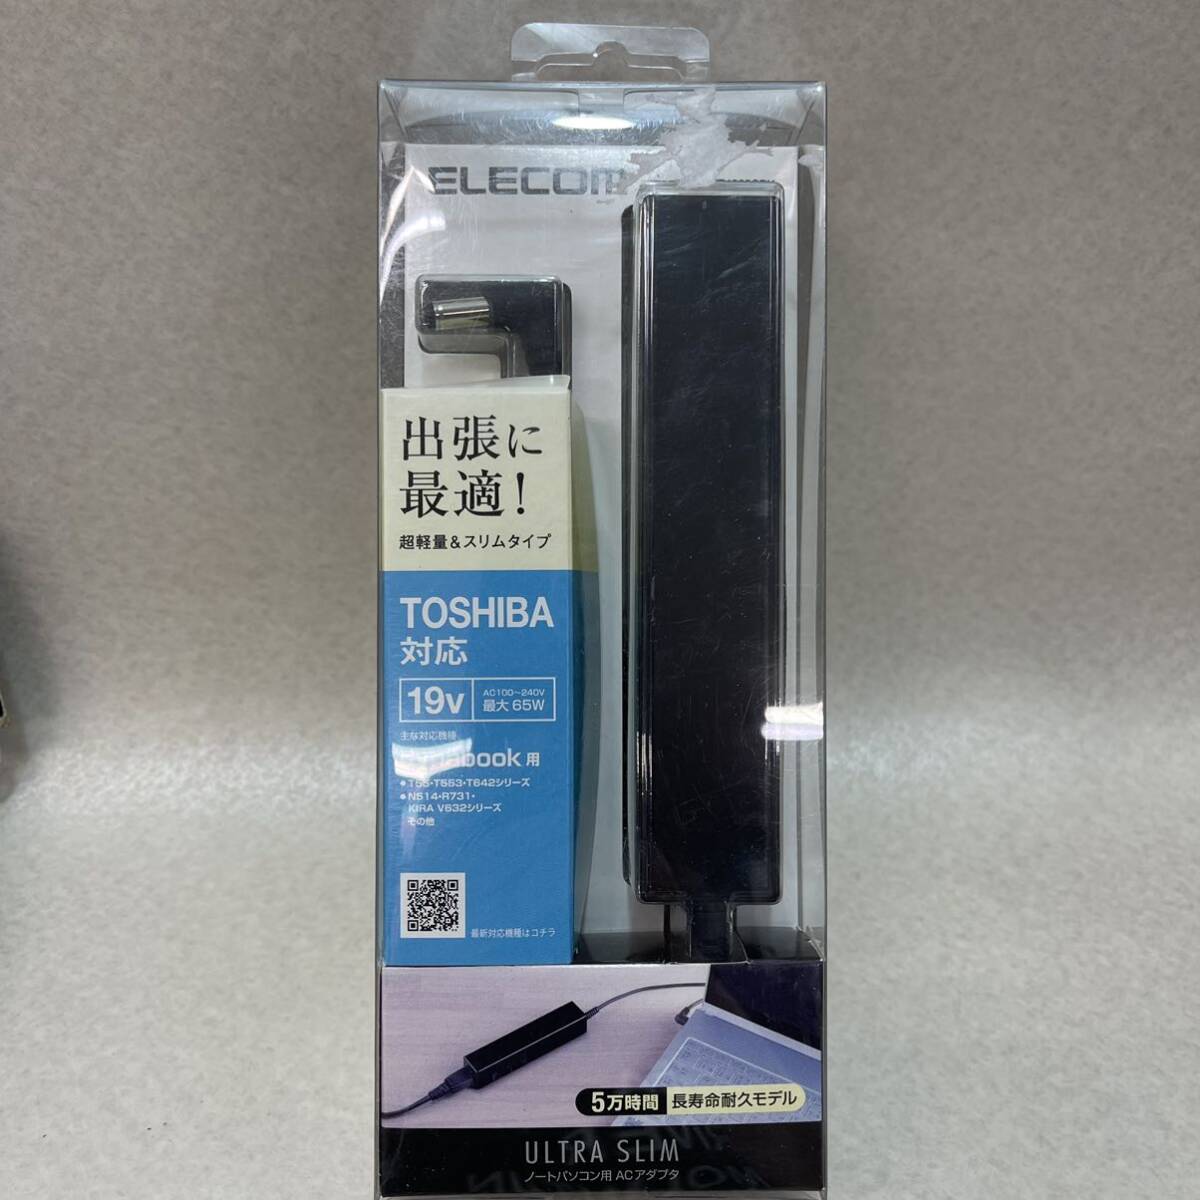 K3057* б/у не использовался товар * ELECOM Elecom ддя ноутбука AC адаптер Ultra тонкий Toshiba Dynabook соответствует ACDC-TB1965CBK